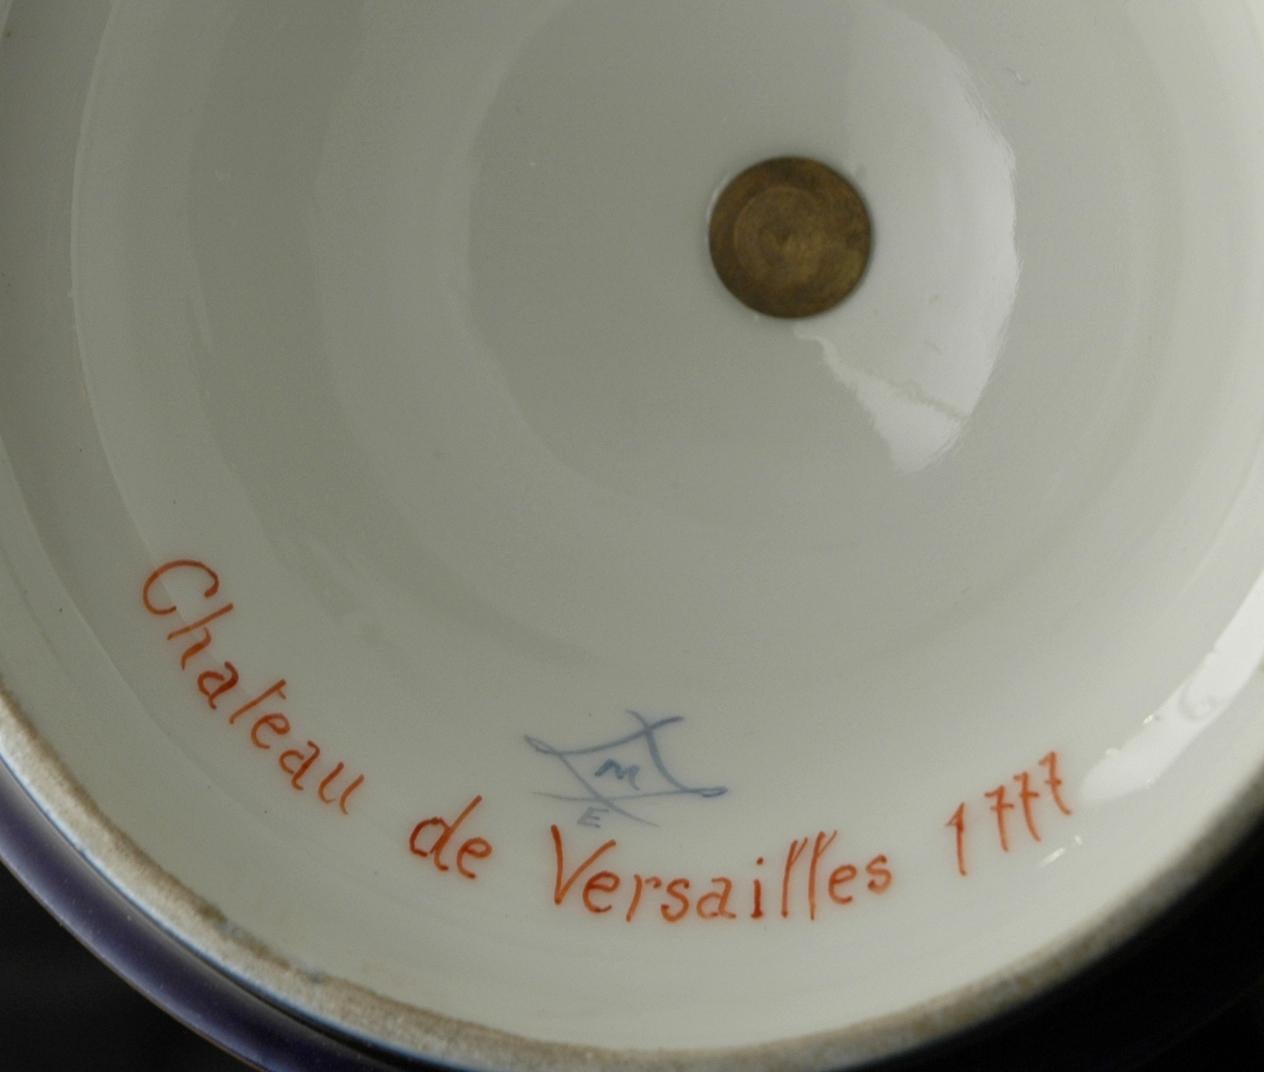 Unsere kobaltblau glasierten Vasen im Louis XV-Stil aus Sèvres sind mit aufwendigen vergoldeten Mustern versehen, darunter das Wappen von Louis XV mit drei Lilien in Schilden, die von den Ketten der Orden des Heiligen Michael und des Heiligen